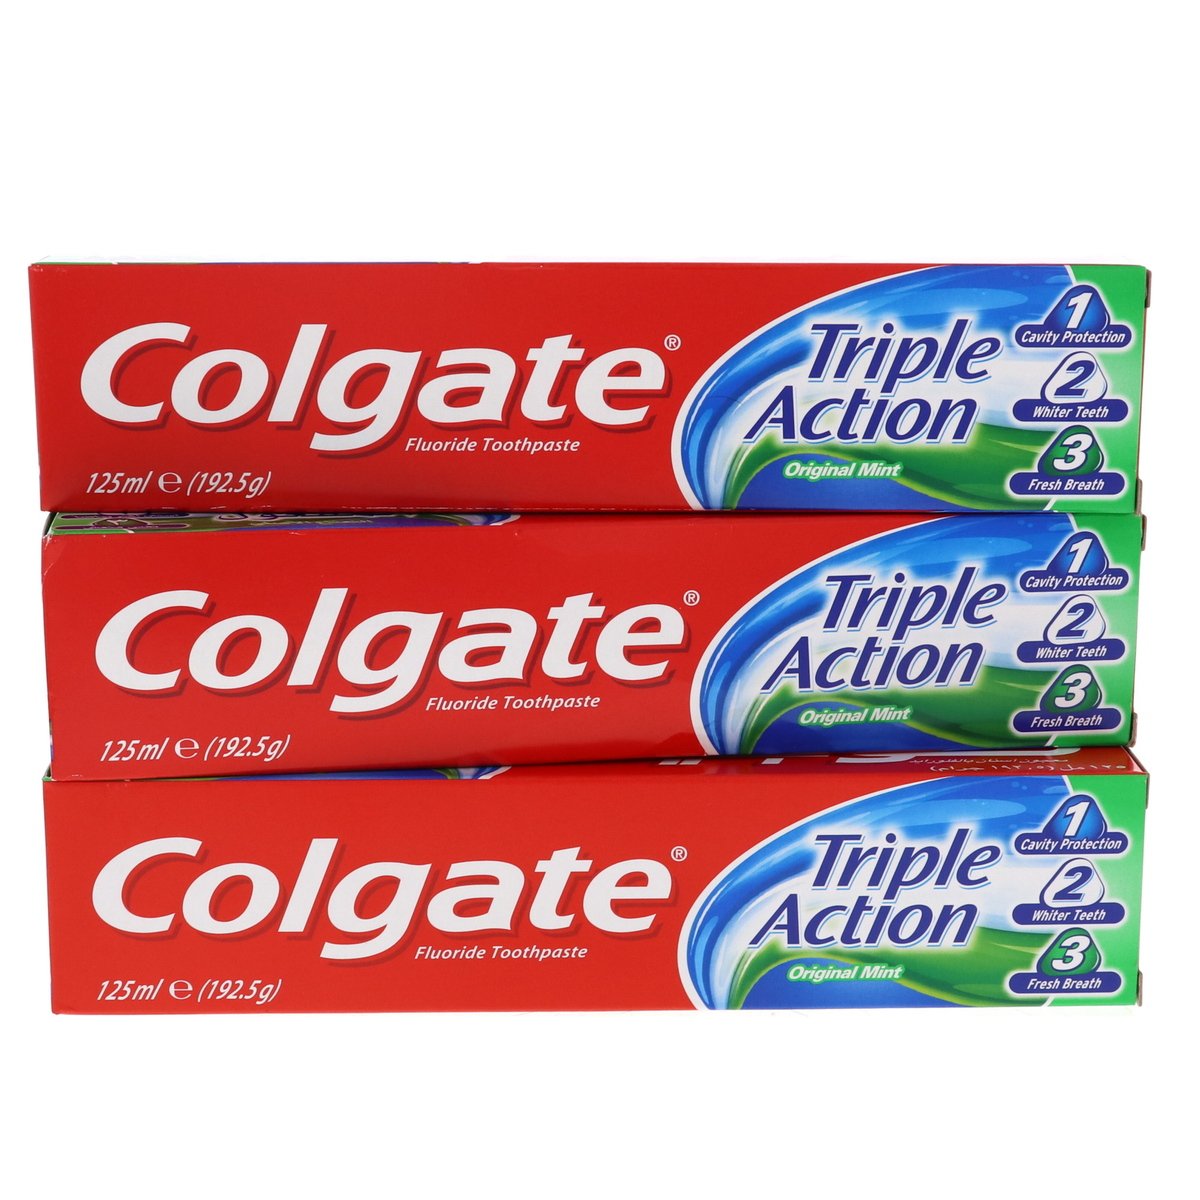 Colgate Triple Action Original Mint Toothpaste 3 x 125 ml